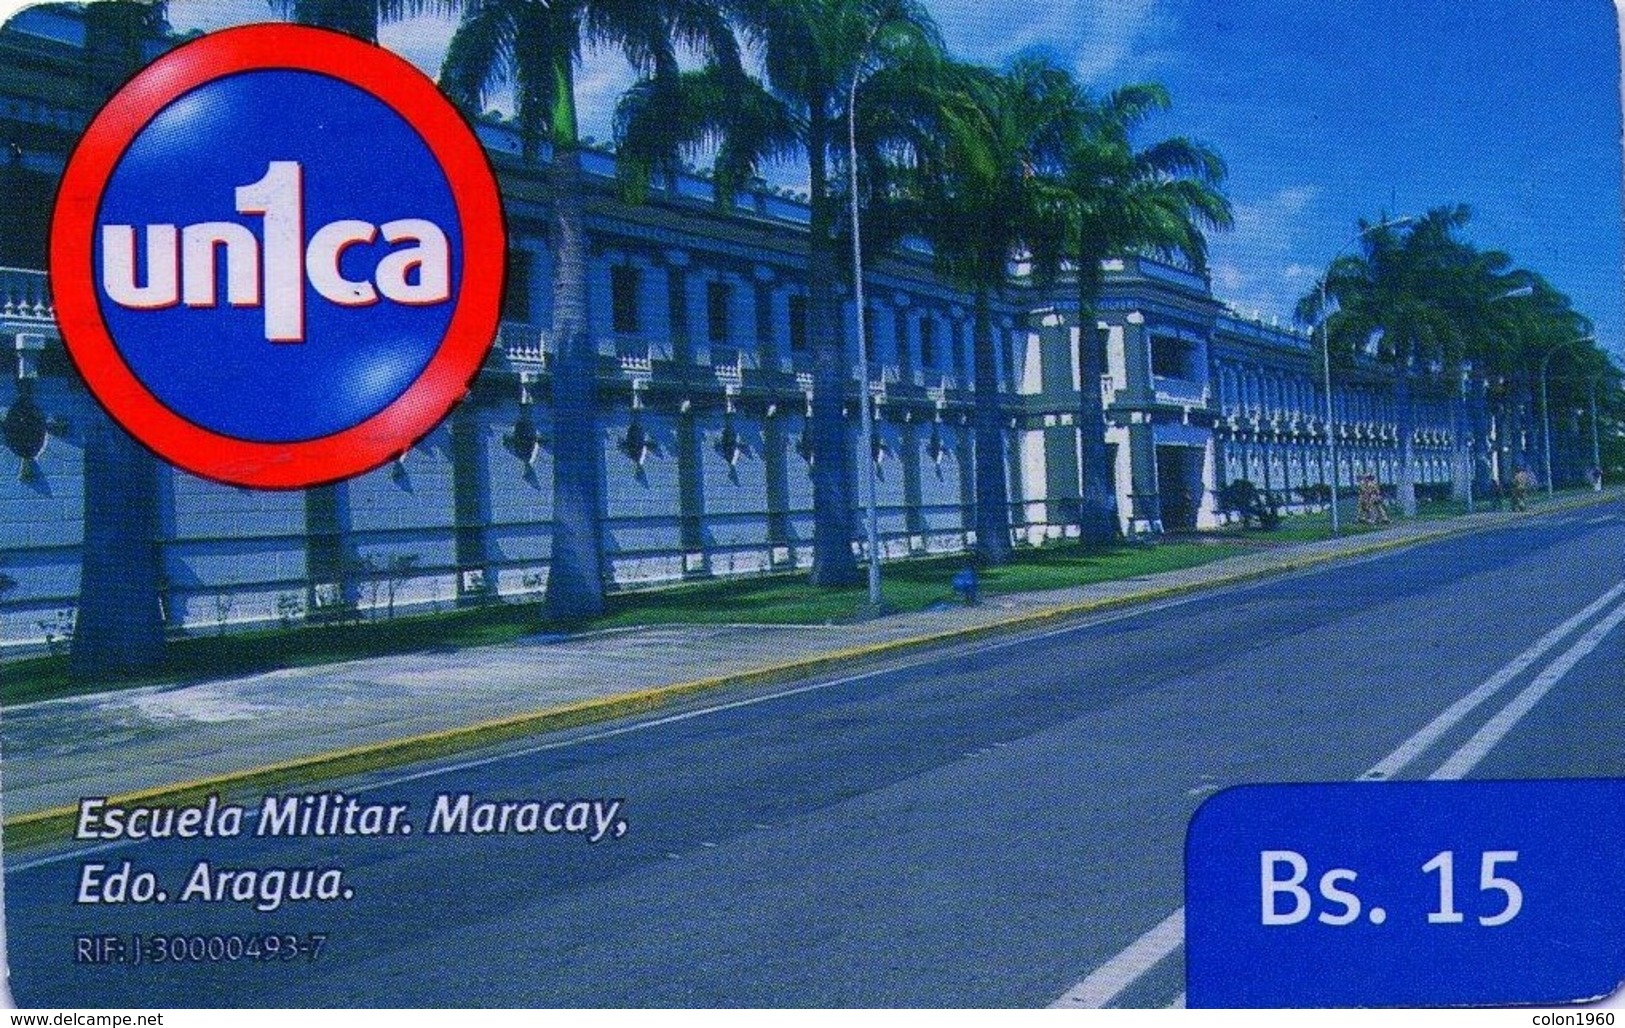 VENEZUELA, GSM-RECARGA. Escuela Militar, Maracay. Edo. Aragua. UI091121. VE-UNICA-U-091121. (280). - Leger